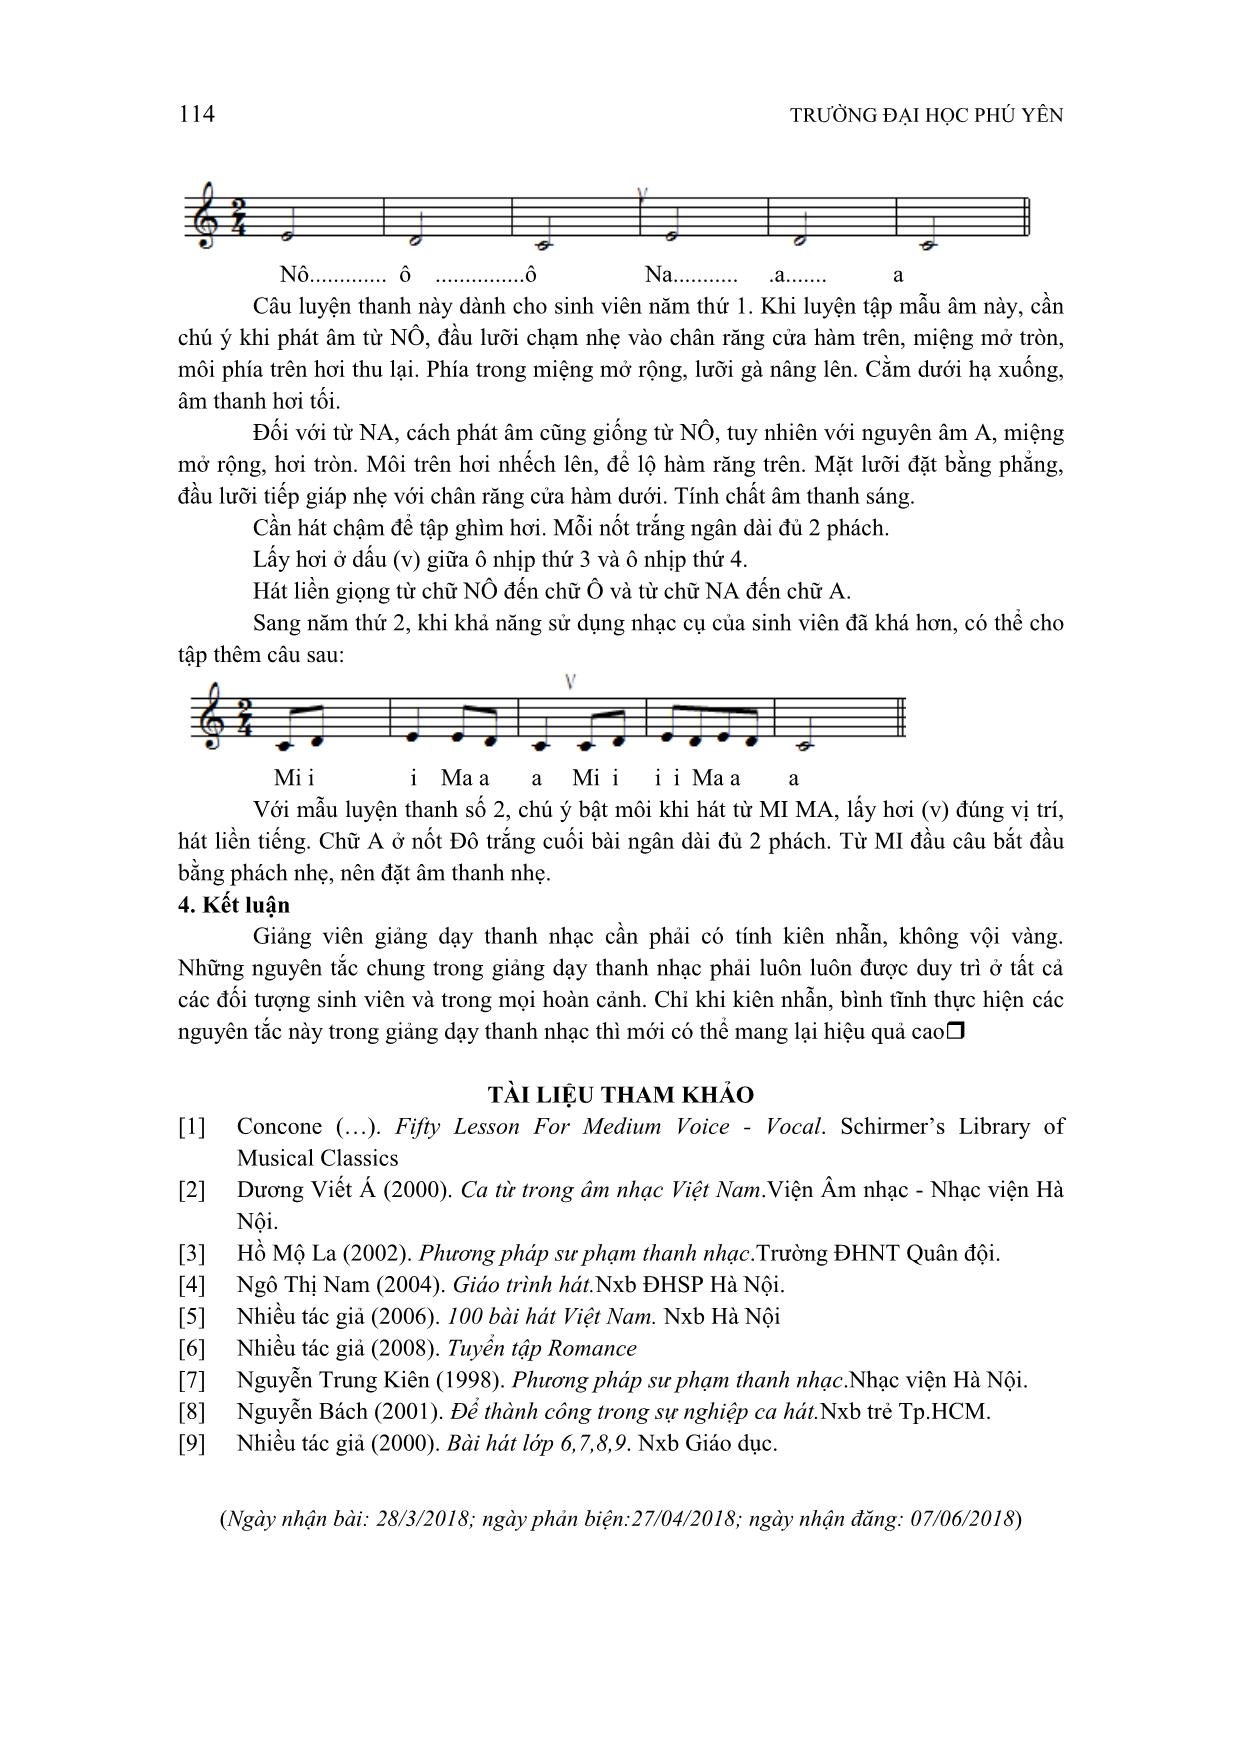 Giải pháp nâng cao chất lượng giảng dạy thanh nhạc cho sinh viên ngành Cao đẳng Sư phạm âm nhạc trang 6